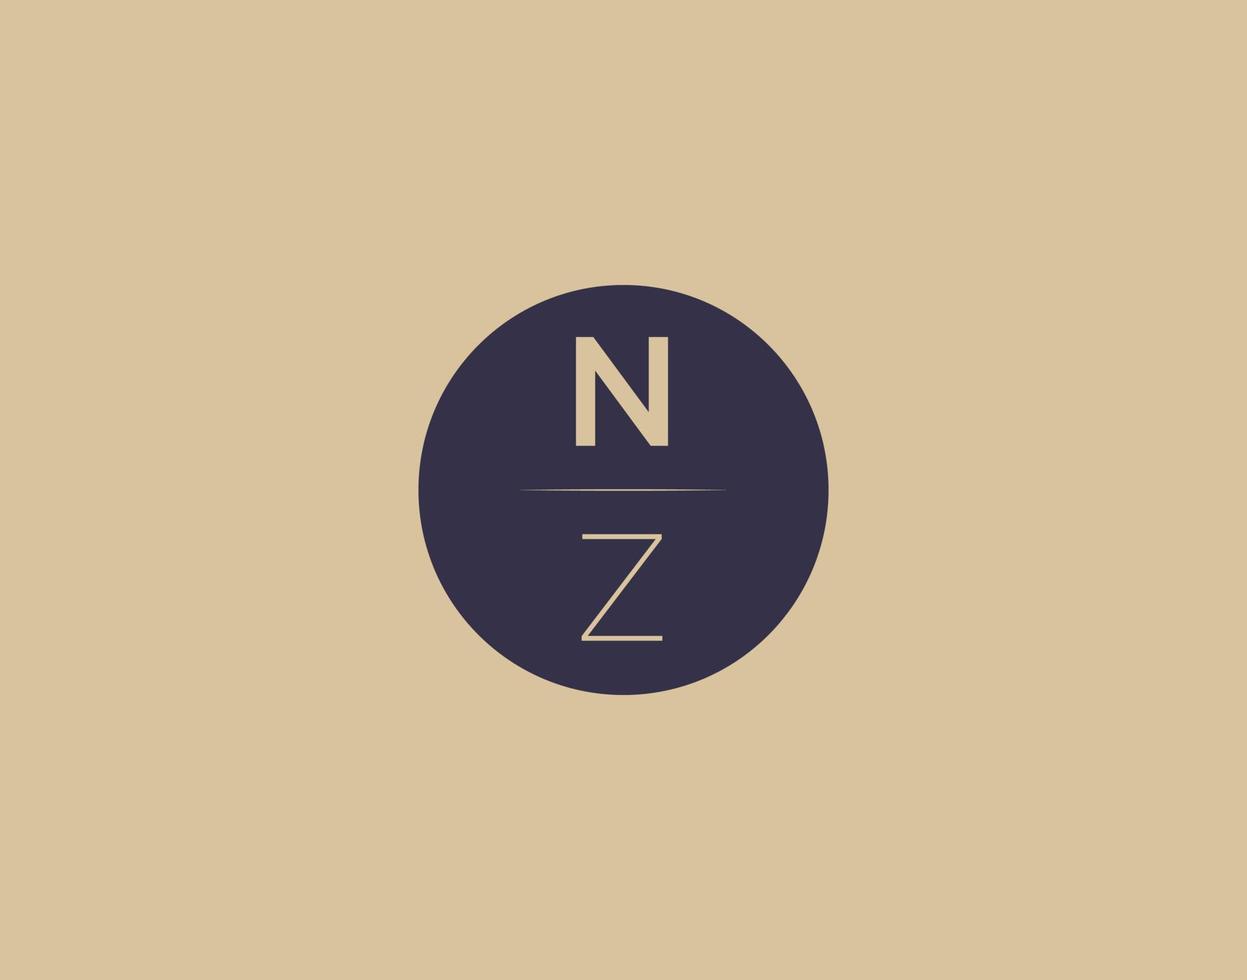 NZ letter modern elegant logo design vector images